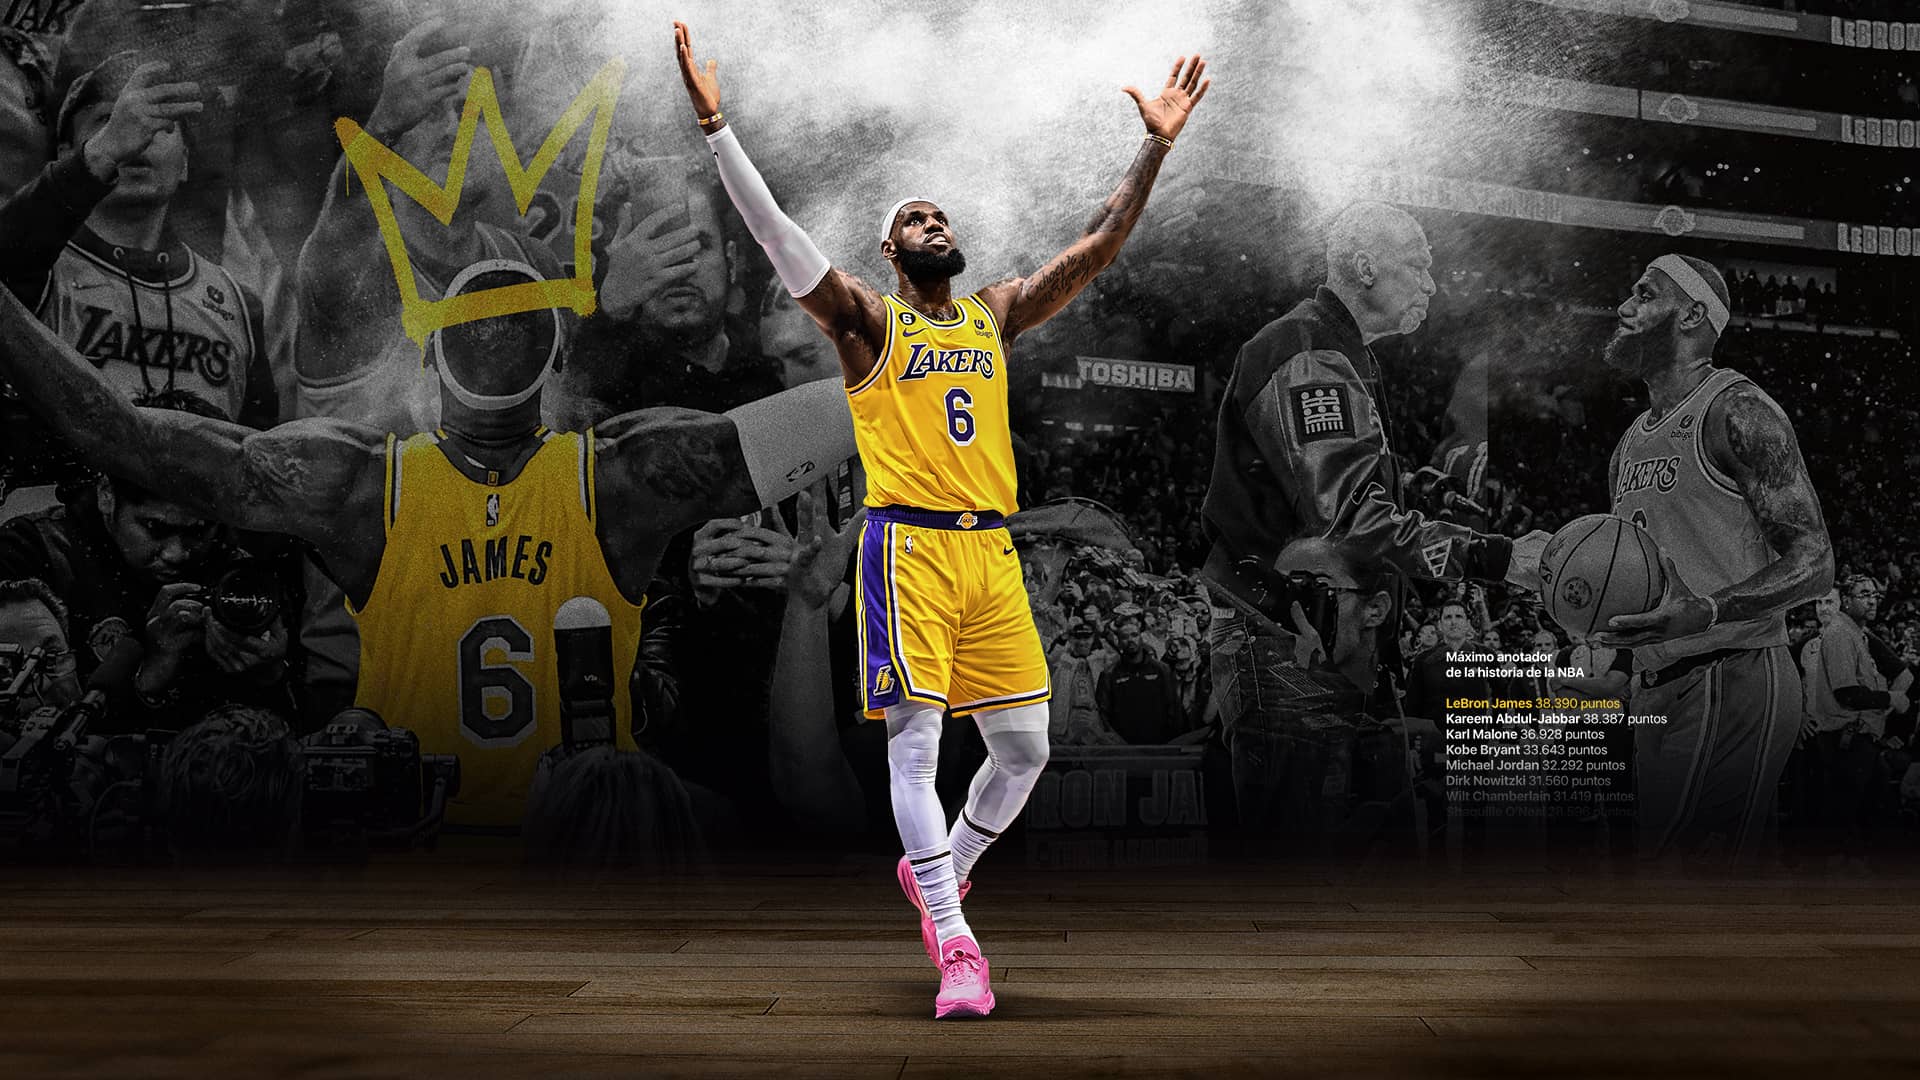 Wallpaper LeBron James Los Angeles Lakers Récord de anotación NBA máximo anotador de la historia